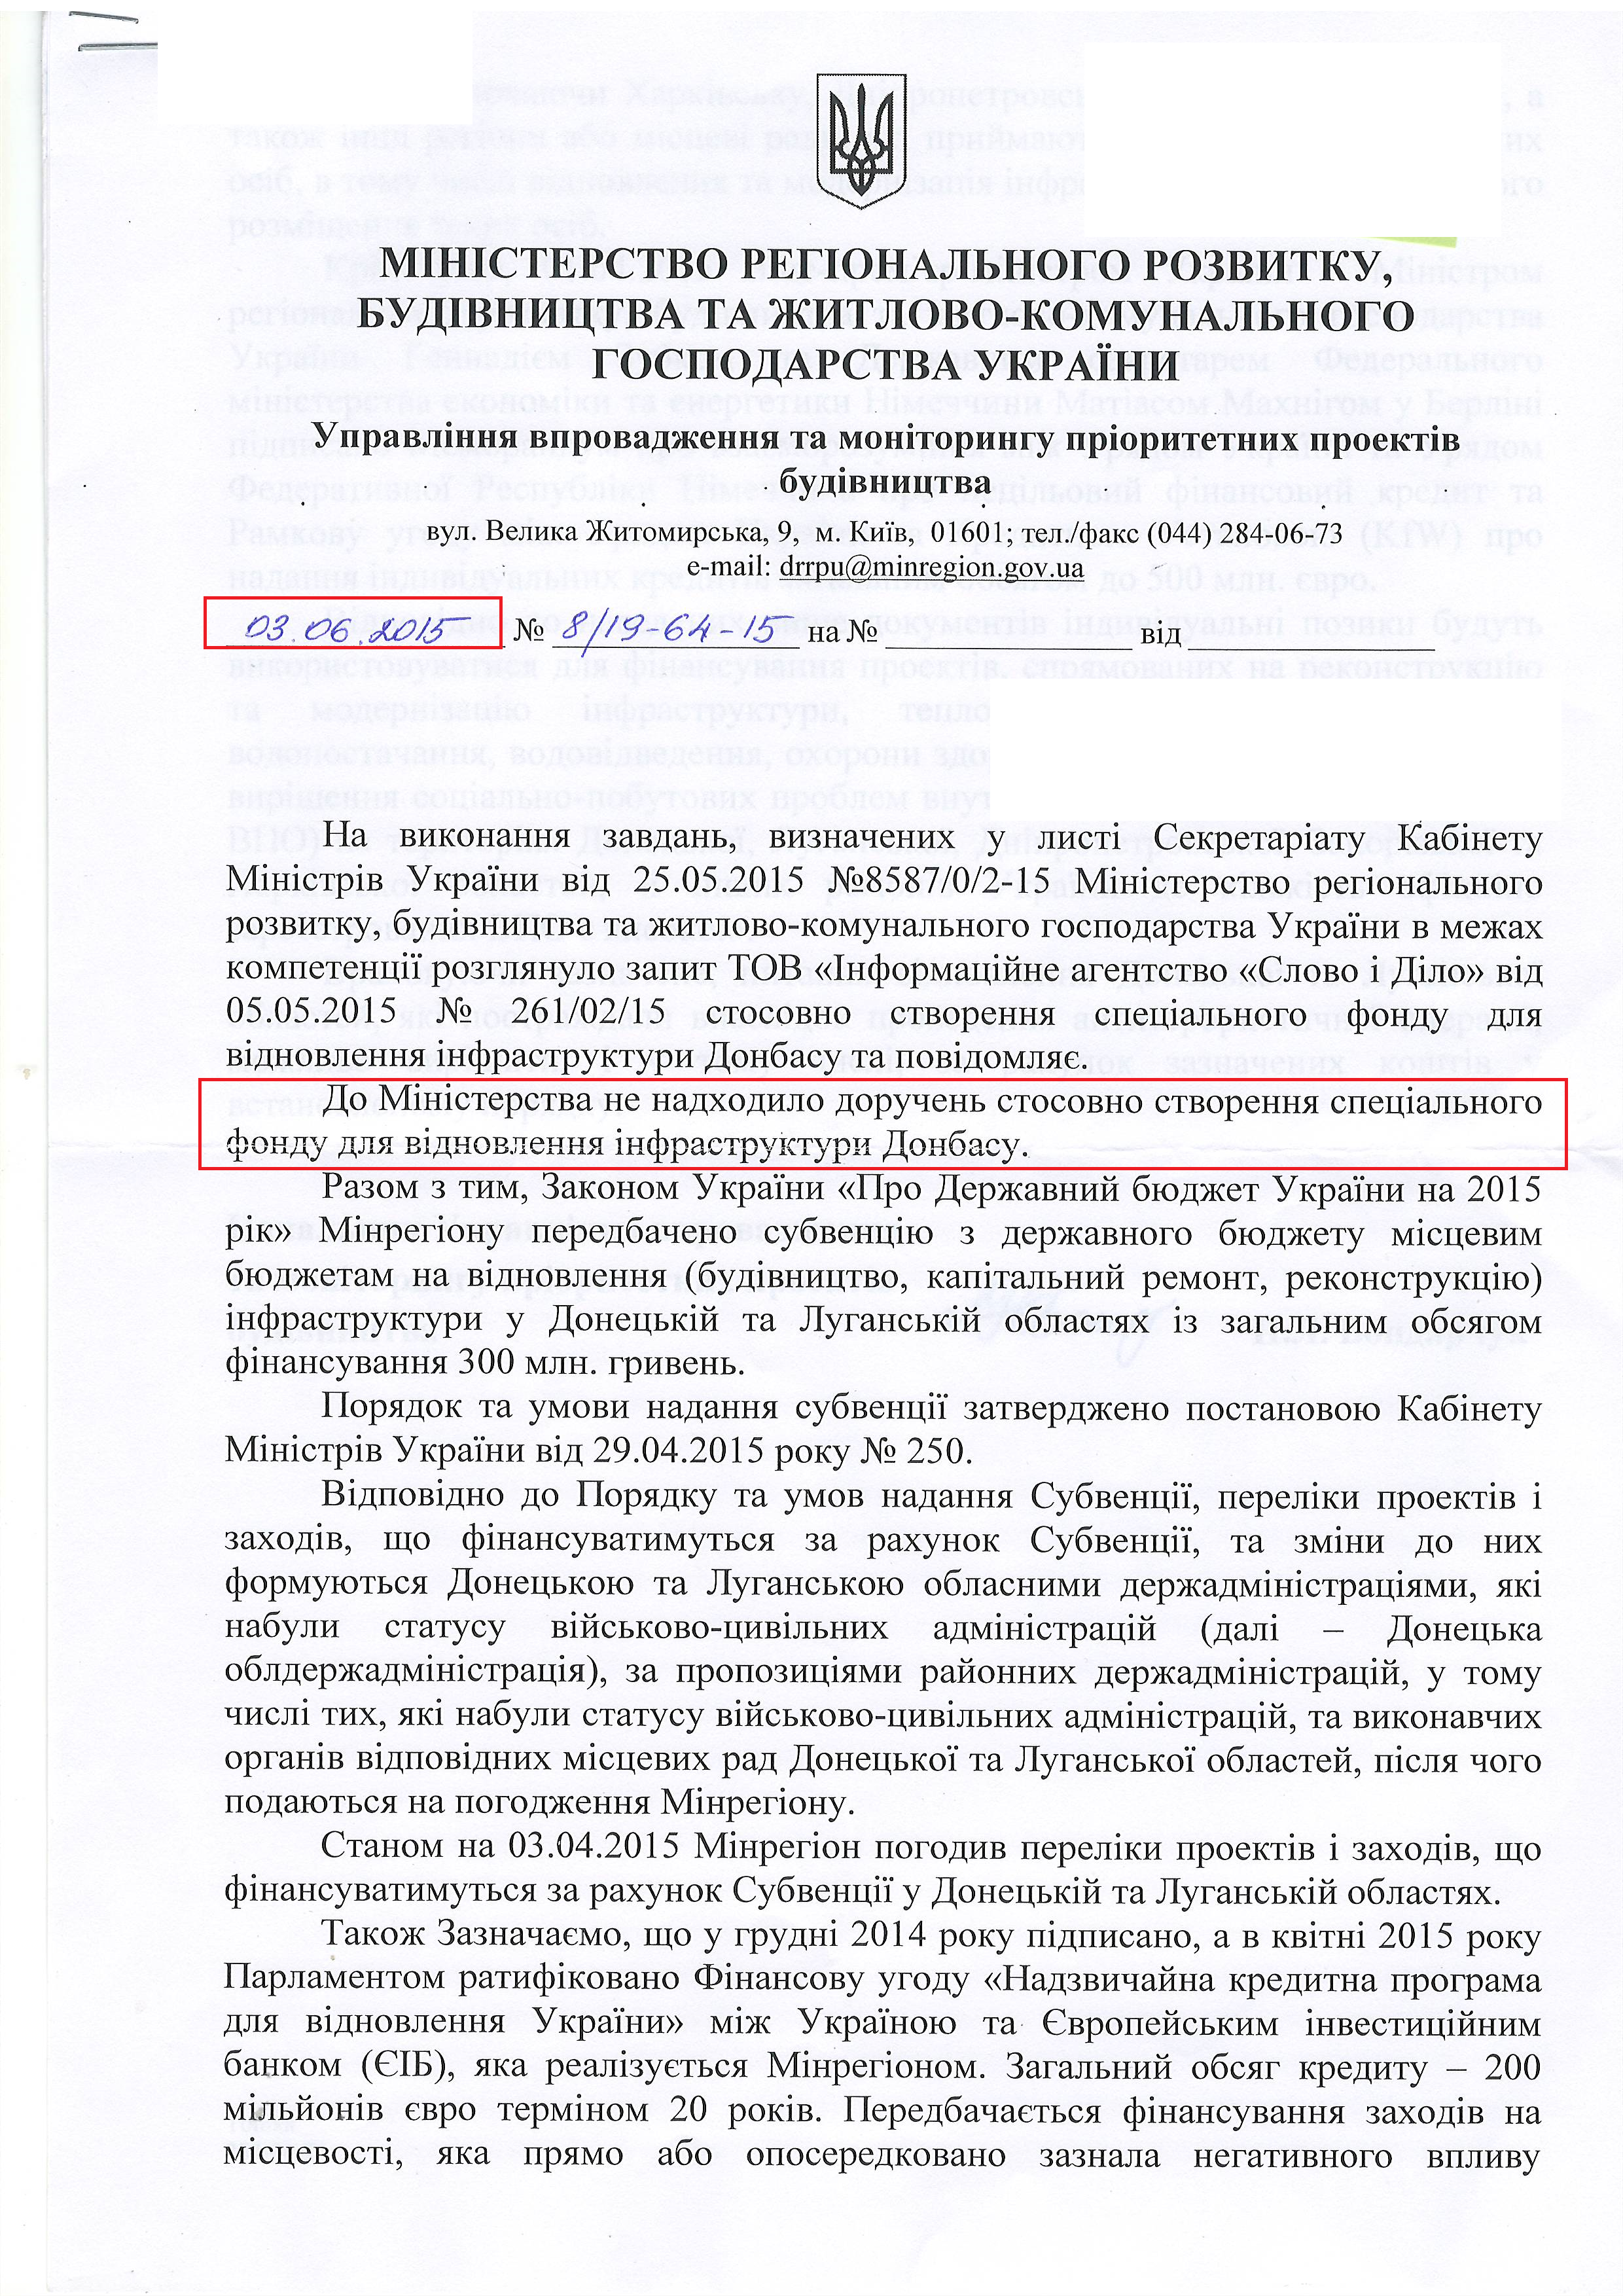 Лист Міністерства регіонального розвитку, будівництва та житлово-комунального господарства України від 3 червня 2015 року